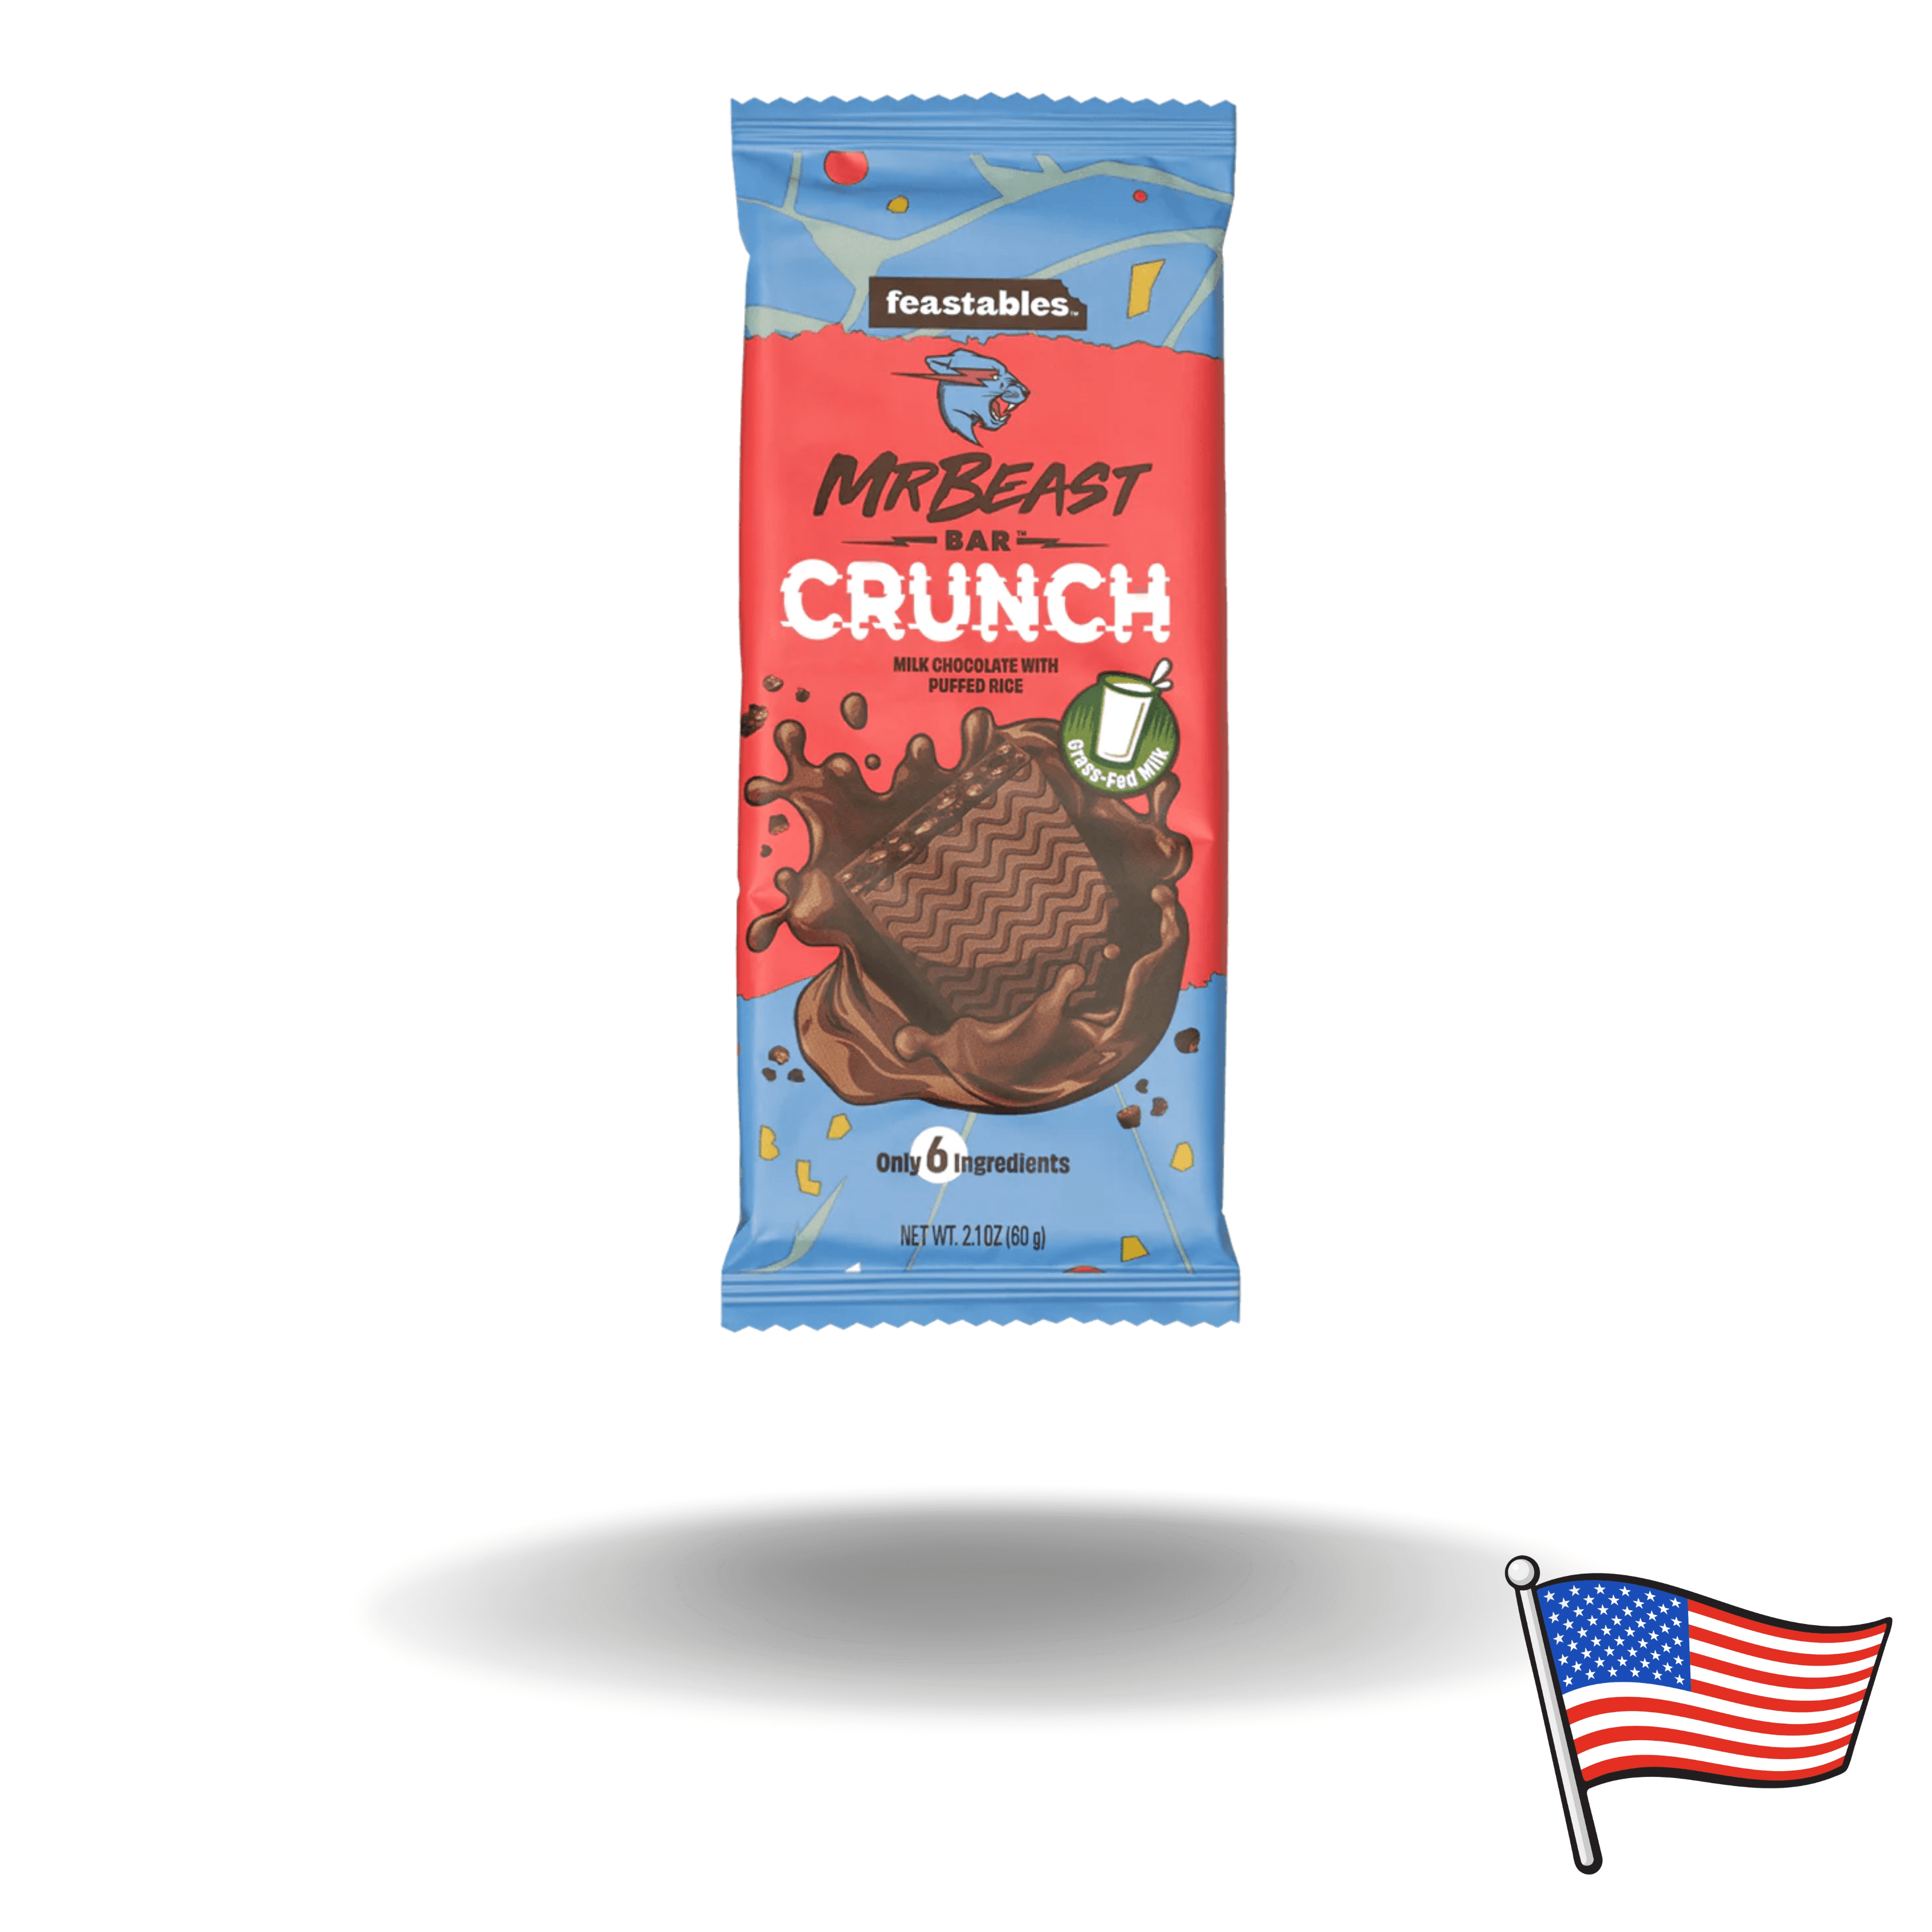 Amerikanische Süßigkeit. Die MrBeast Crunch Schokolade des bekannten Youtubers gibt es normal nur in Amerika. Wir haben sie für euch in allen Sorten auch in Österreich